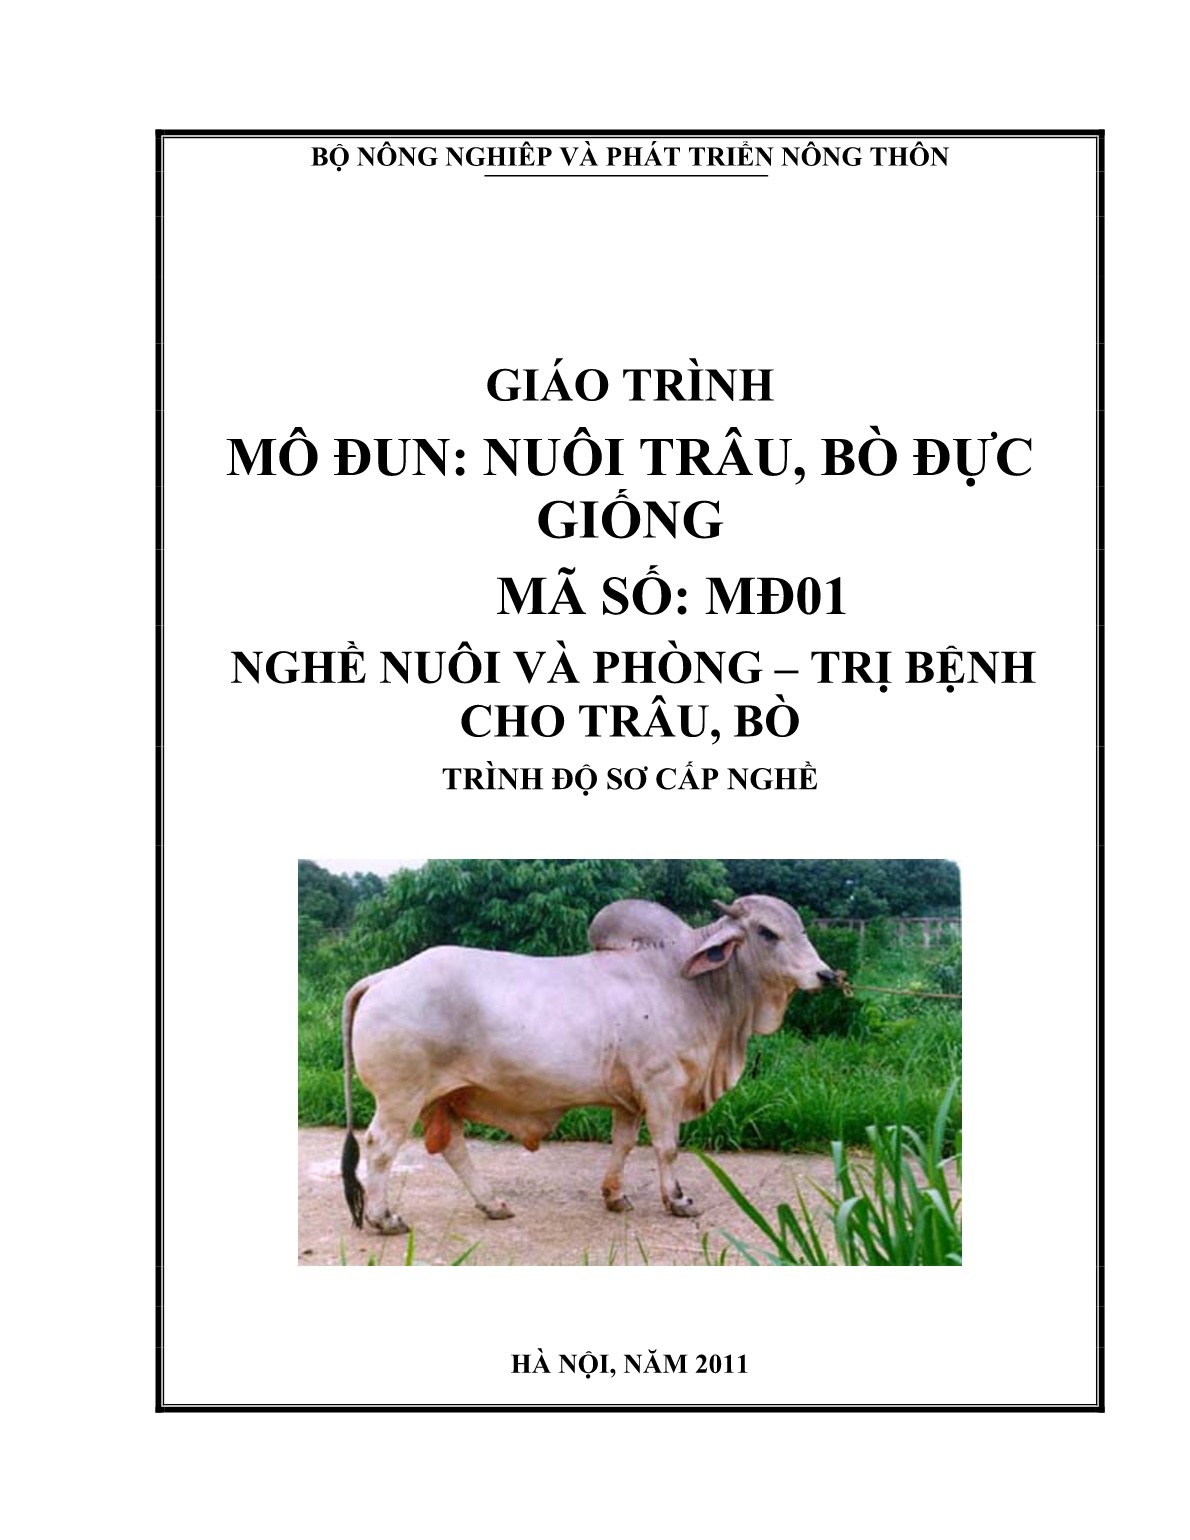 Giáo trình mô đun Nuôi trâu, bò đực giống (Trình độ: Sơ cấp nghề) trang 1